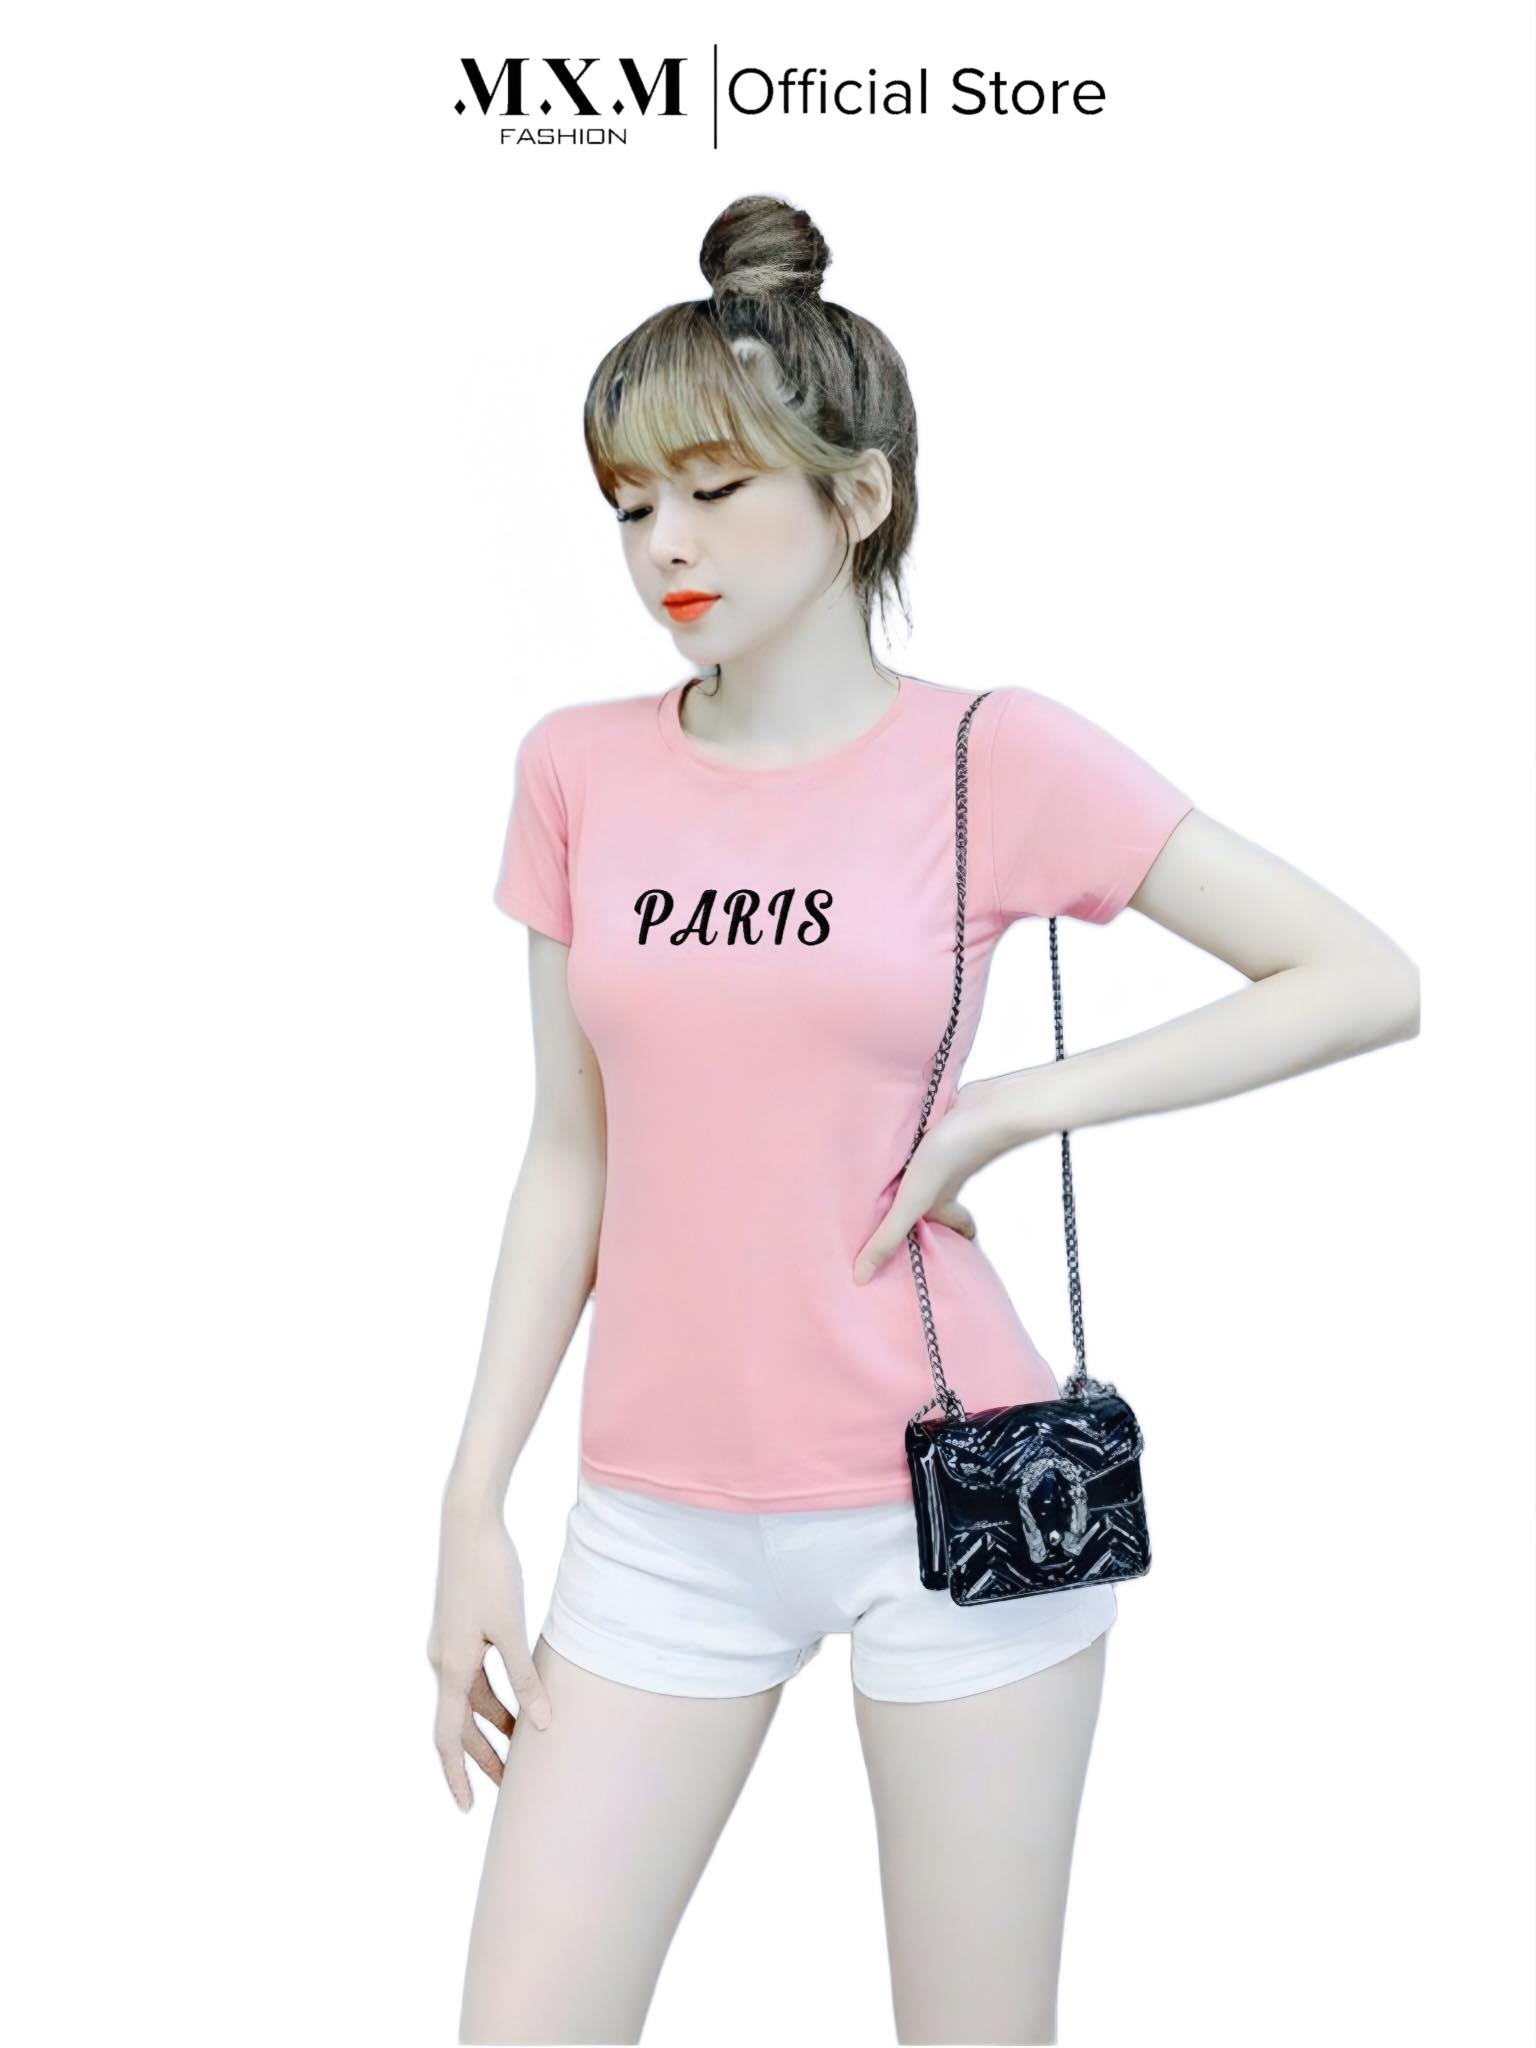 Áo thun nữ MXM ôm body thêu chữ Paris cotton 4 chiều từ 40kg - 52kg ( ANU029 )